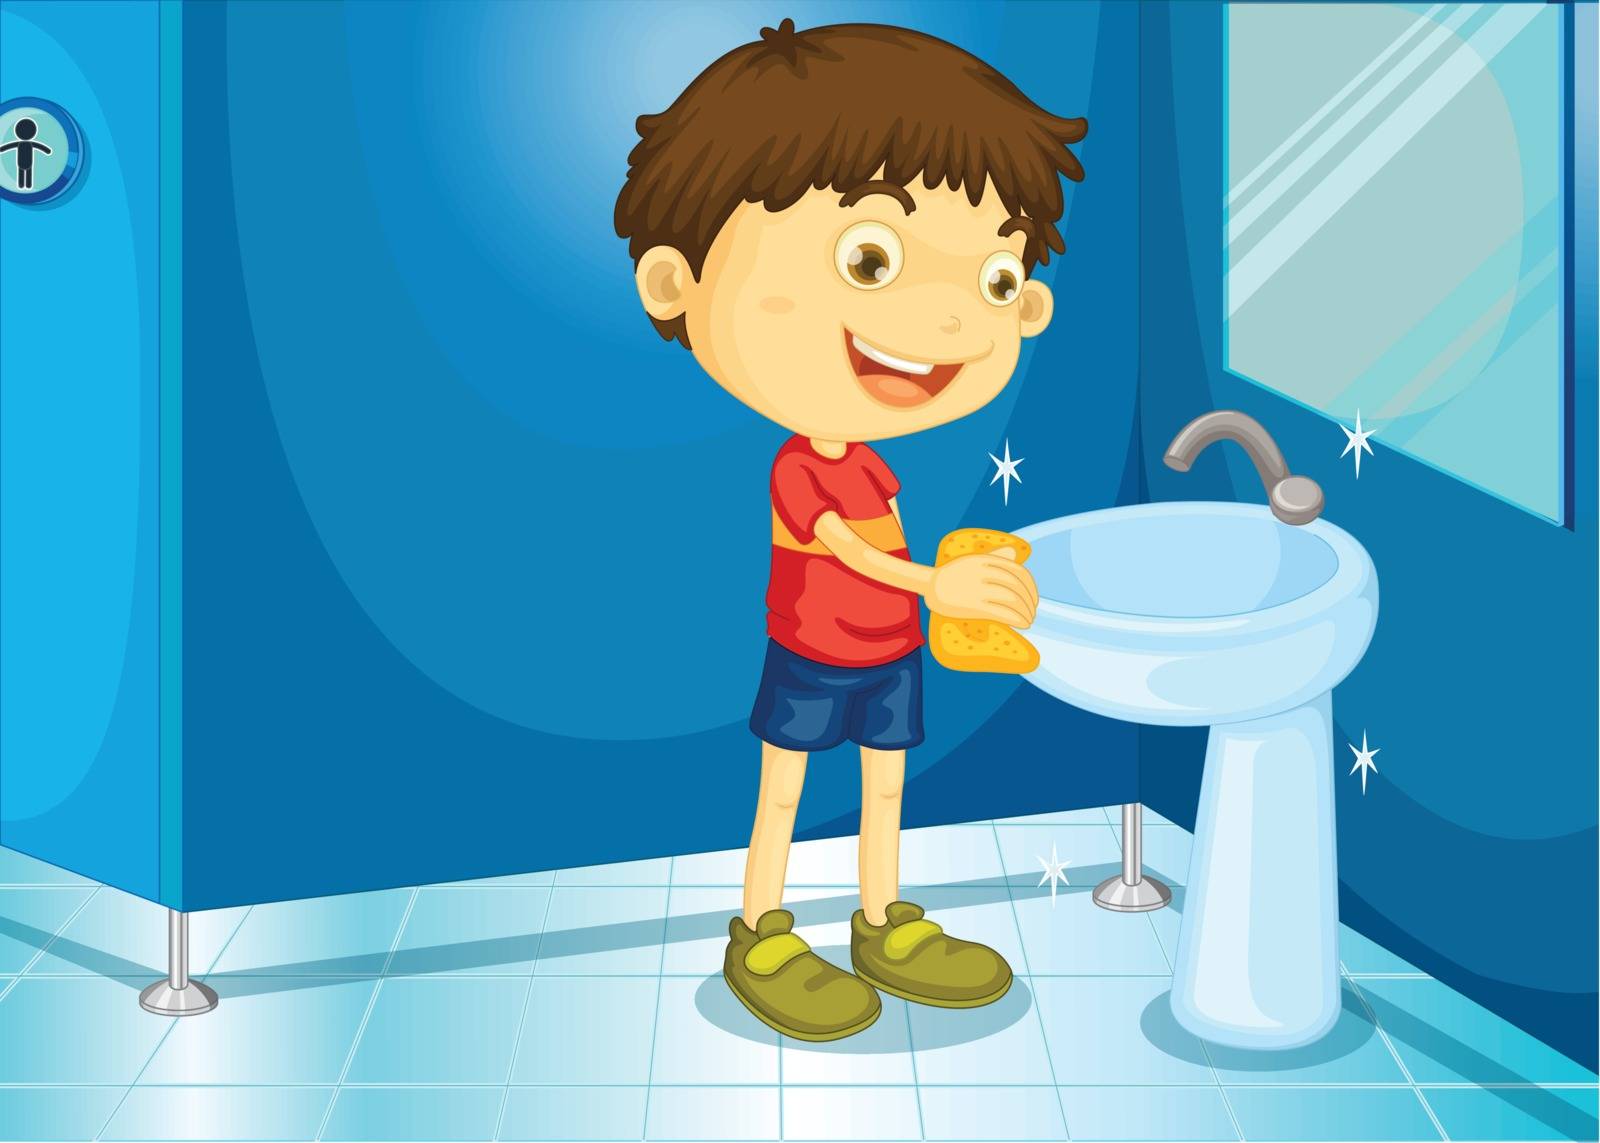 Illustration of a boy in a bathroom